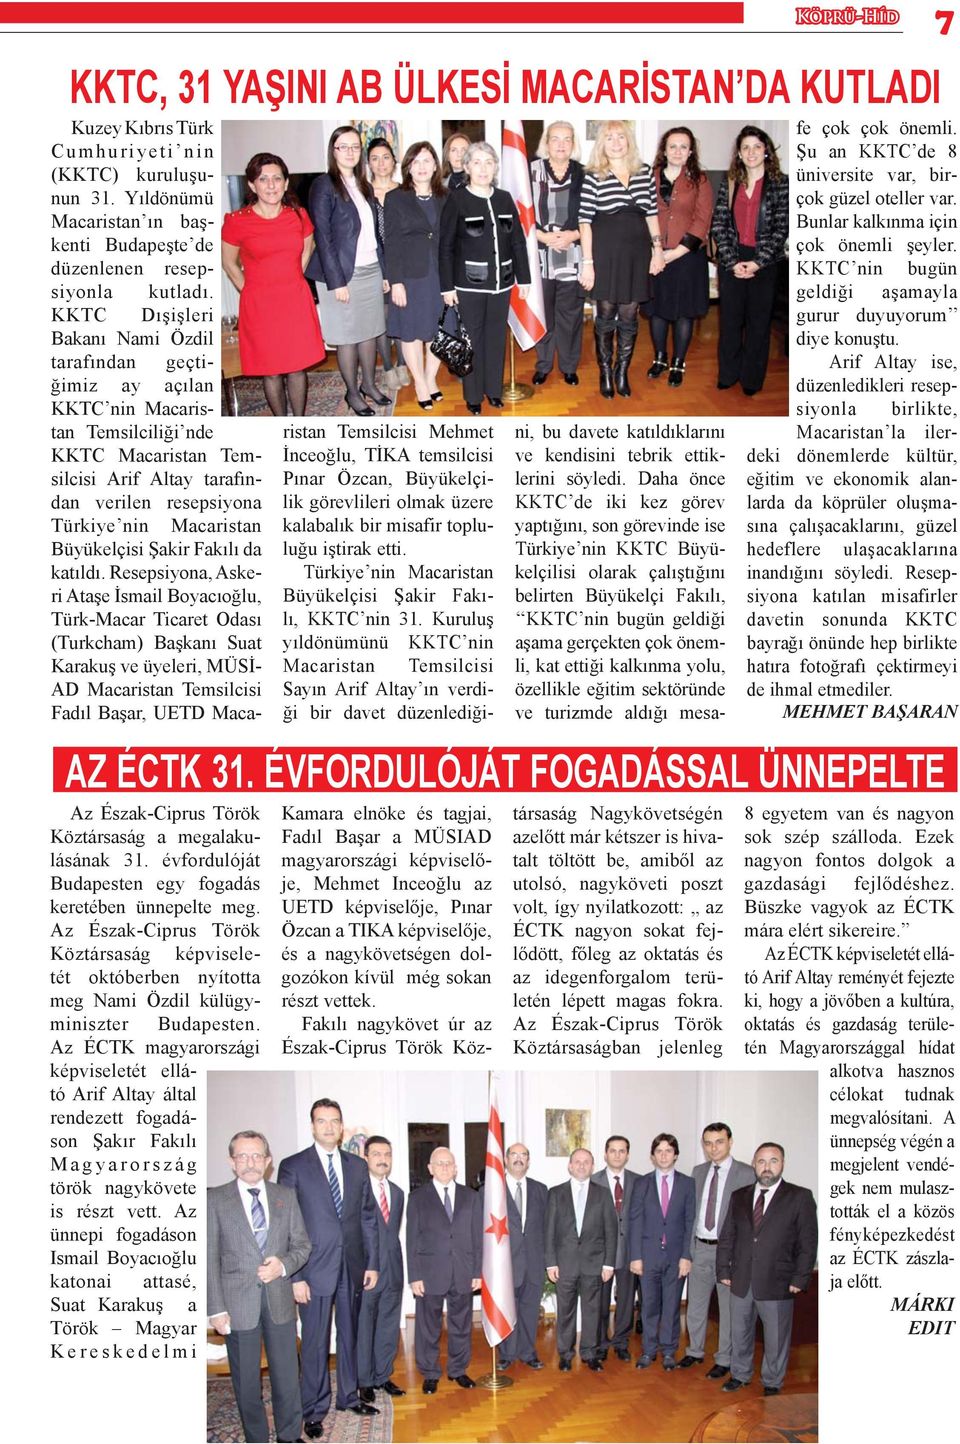 Az ÉCTK magyarországi képviseletét ellátó Arif Altay által rendezett fogadáson Şakır Fakılı Magyarország török nagykövete is részt vett.